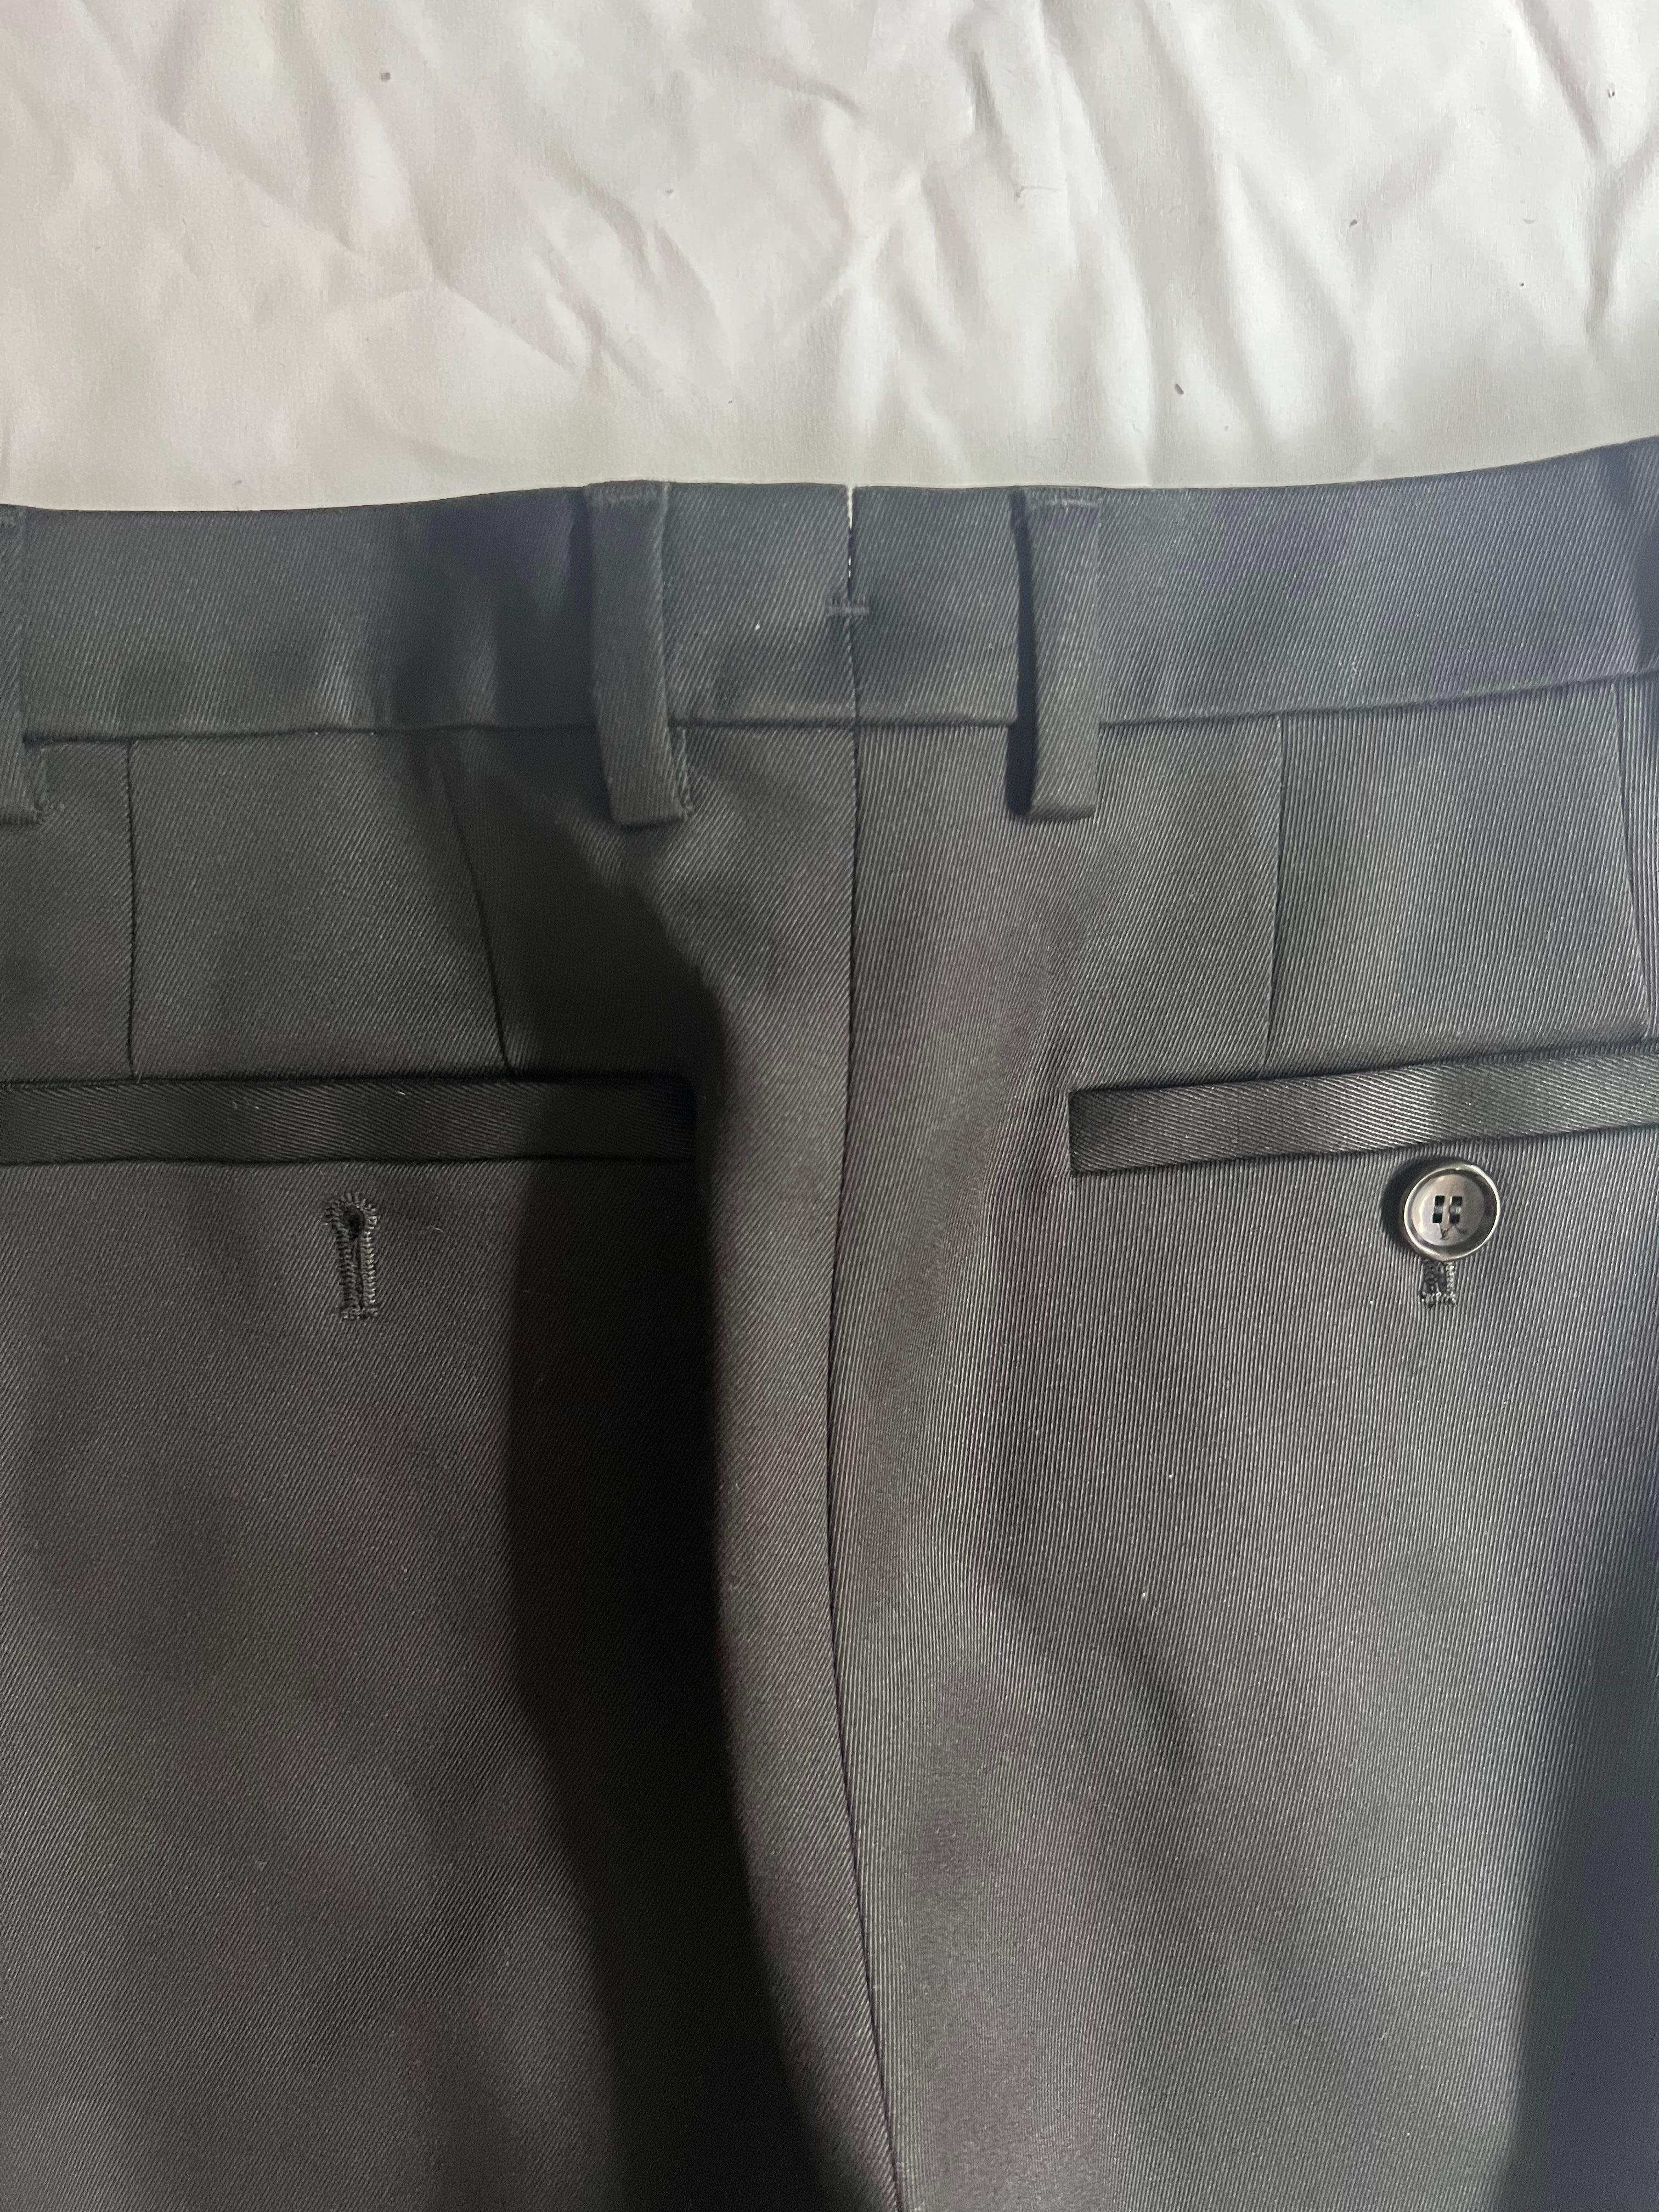 Louis Vuitton Black Trousers Pants, Size 38 For Sale 1